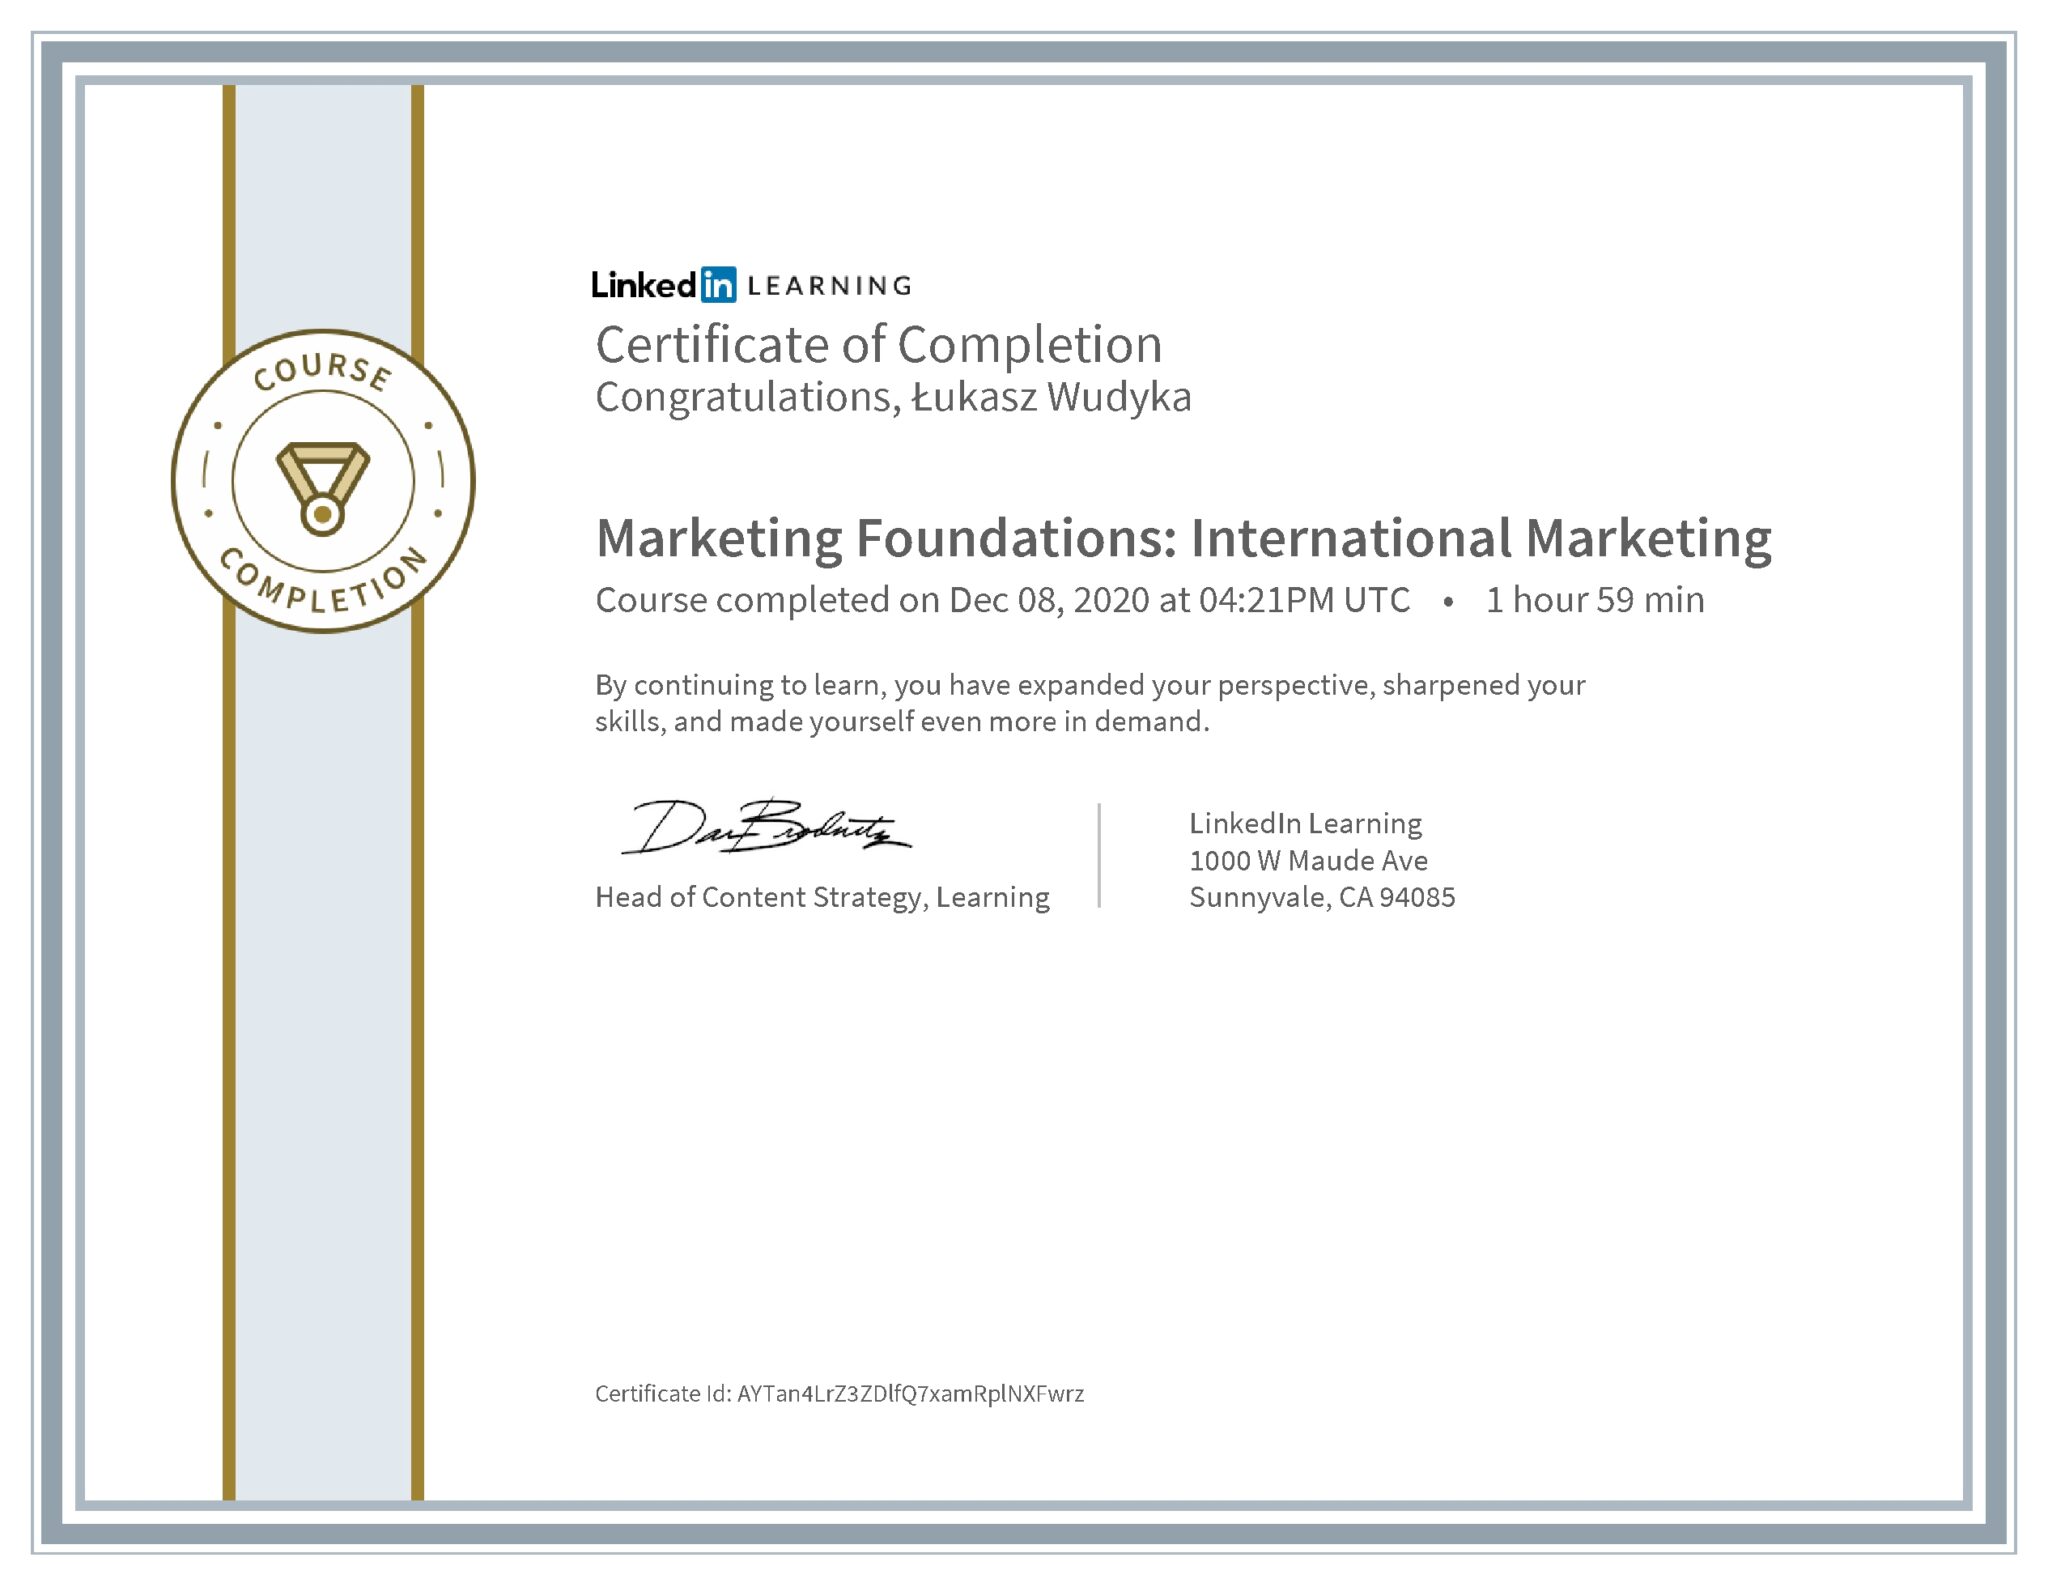 Łukasz Wudyka certyfikat LinkedIn Marketing Foundations: International Marketing